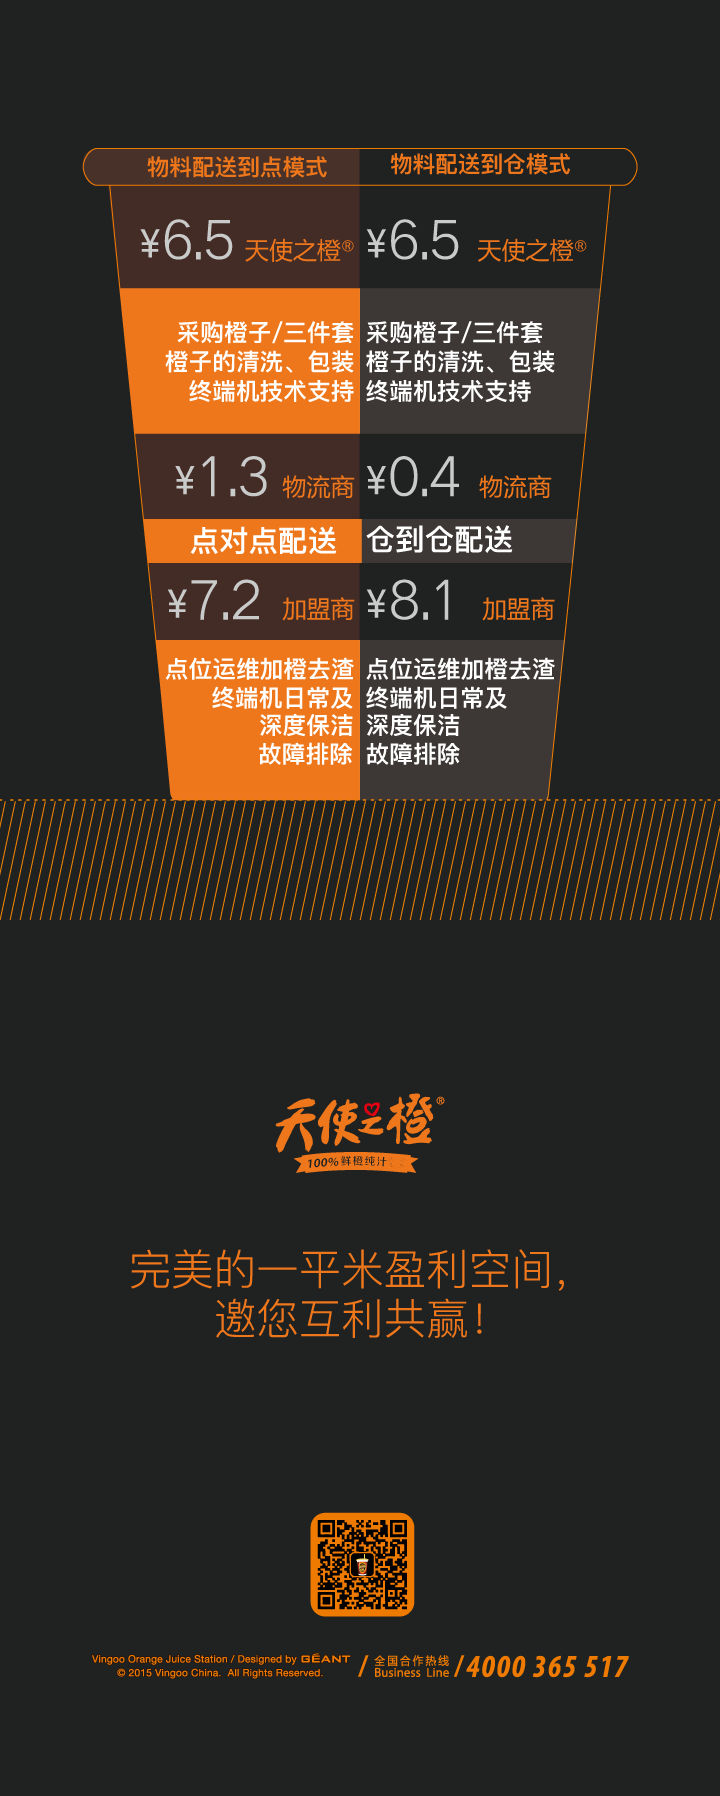 上海特许加盟展1.png